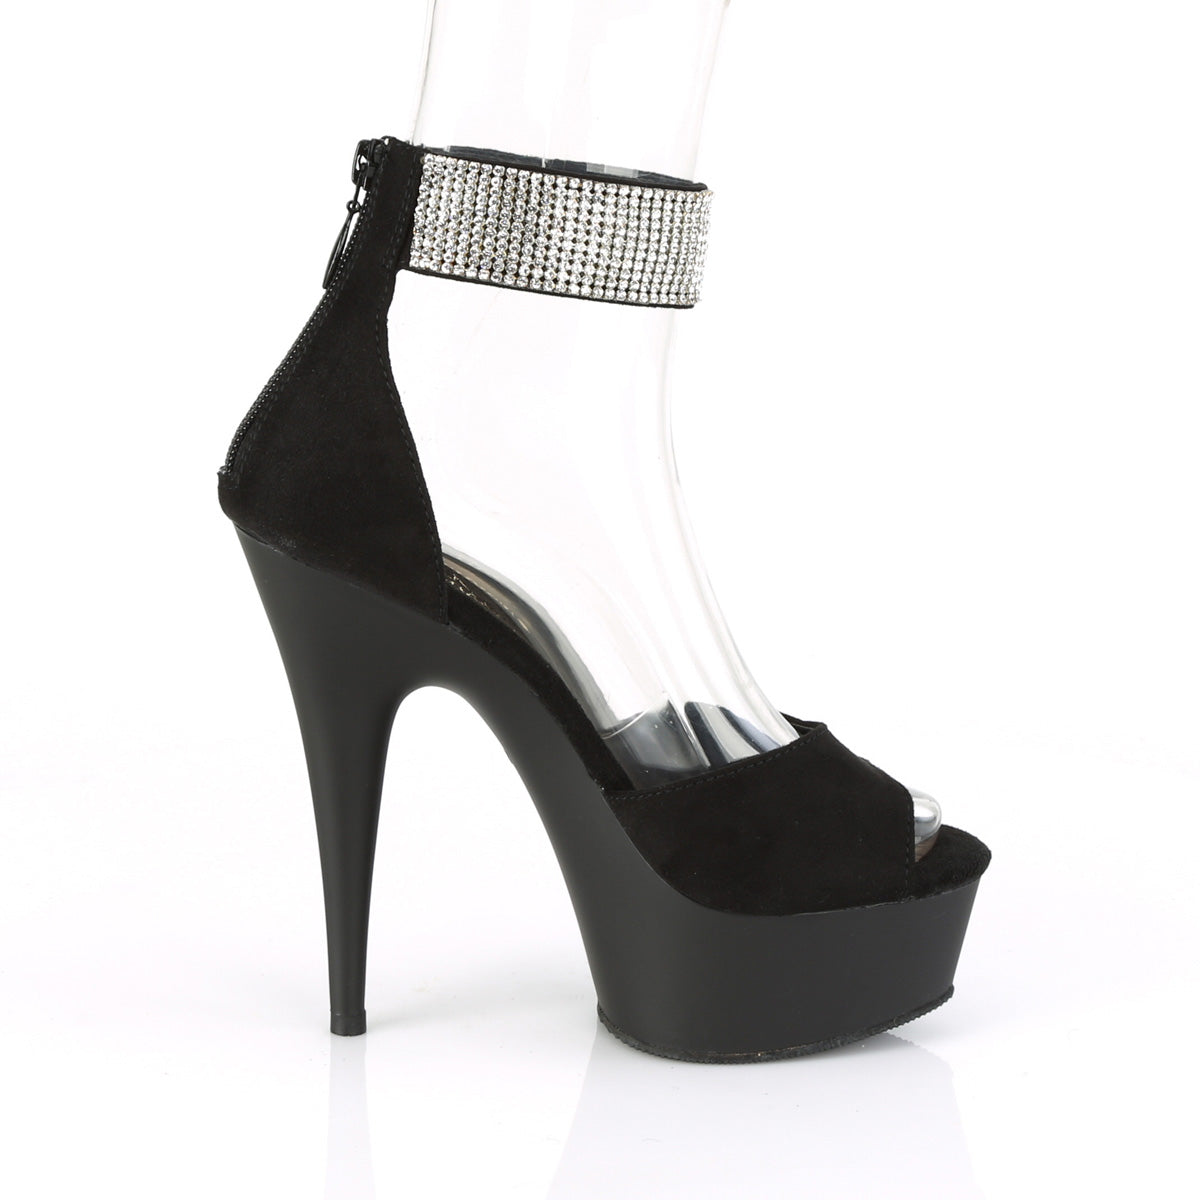 DELIGHT-625 Pleaser 6 Inch Heel Black Pole Dancing Platform-Pleaser- Sexy Shoes Fetish Heels